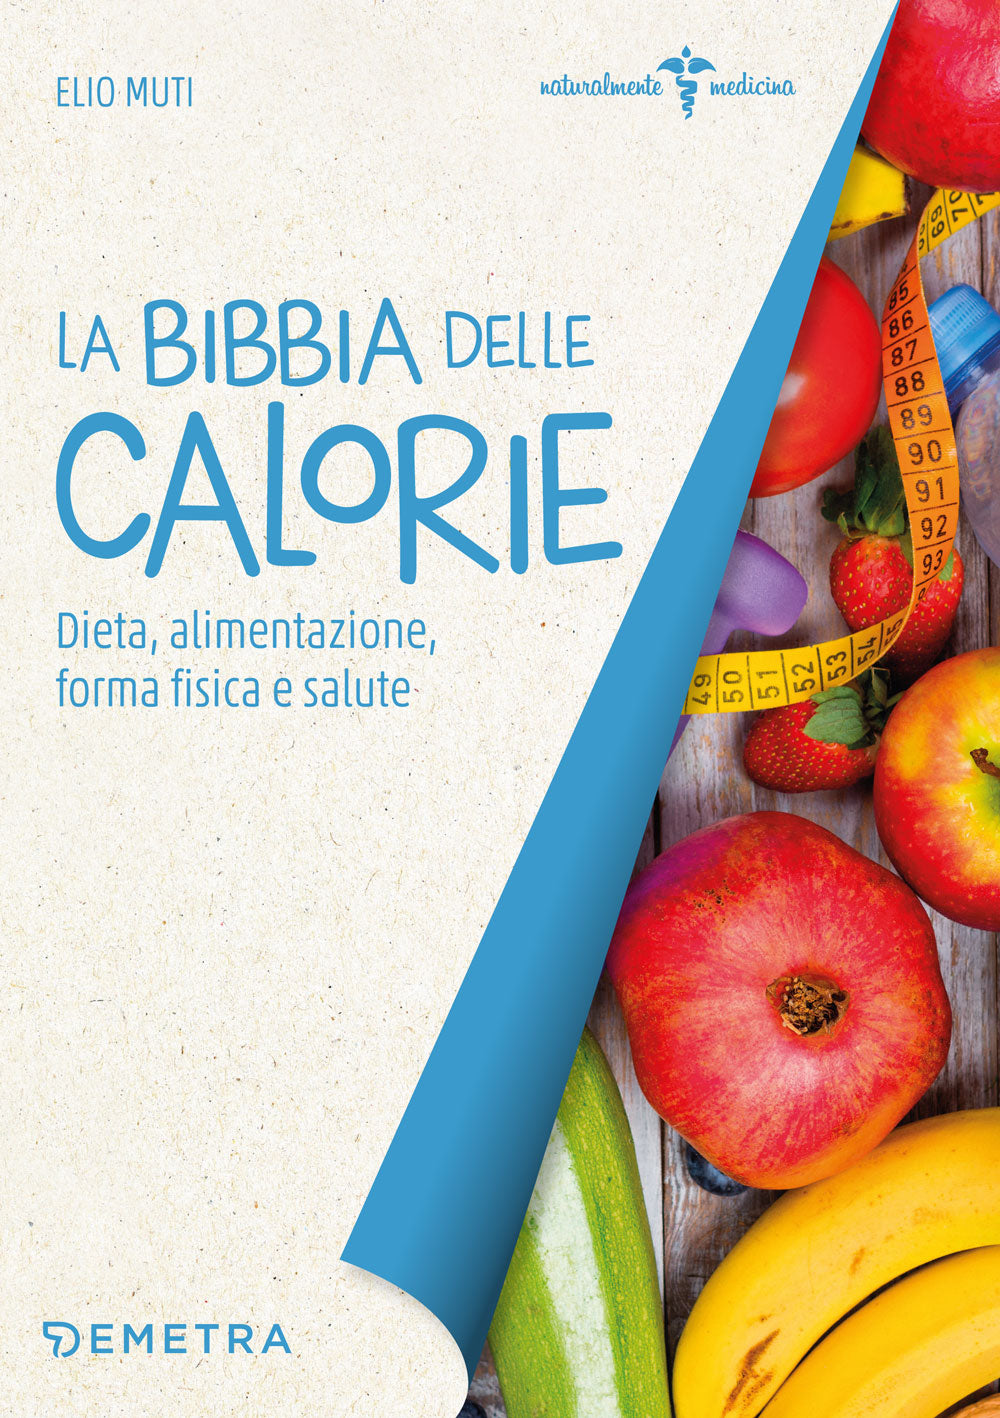 La bibbia delle calorie::Dieta, alimentazione, forma fisica e salute